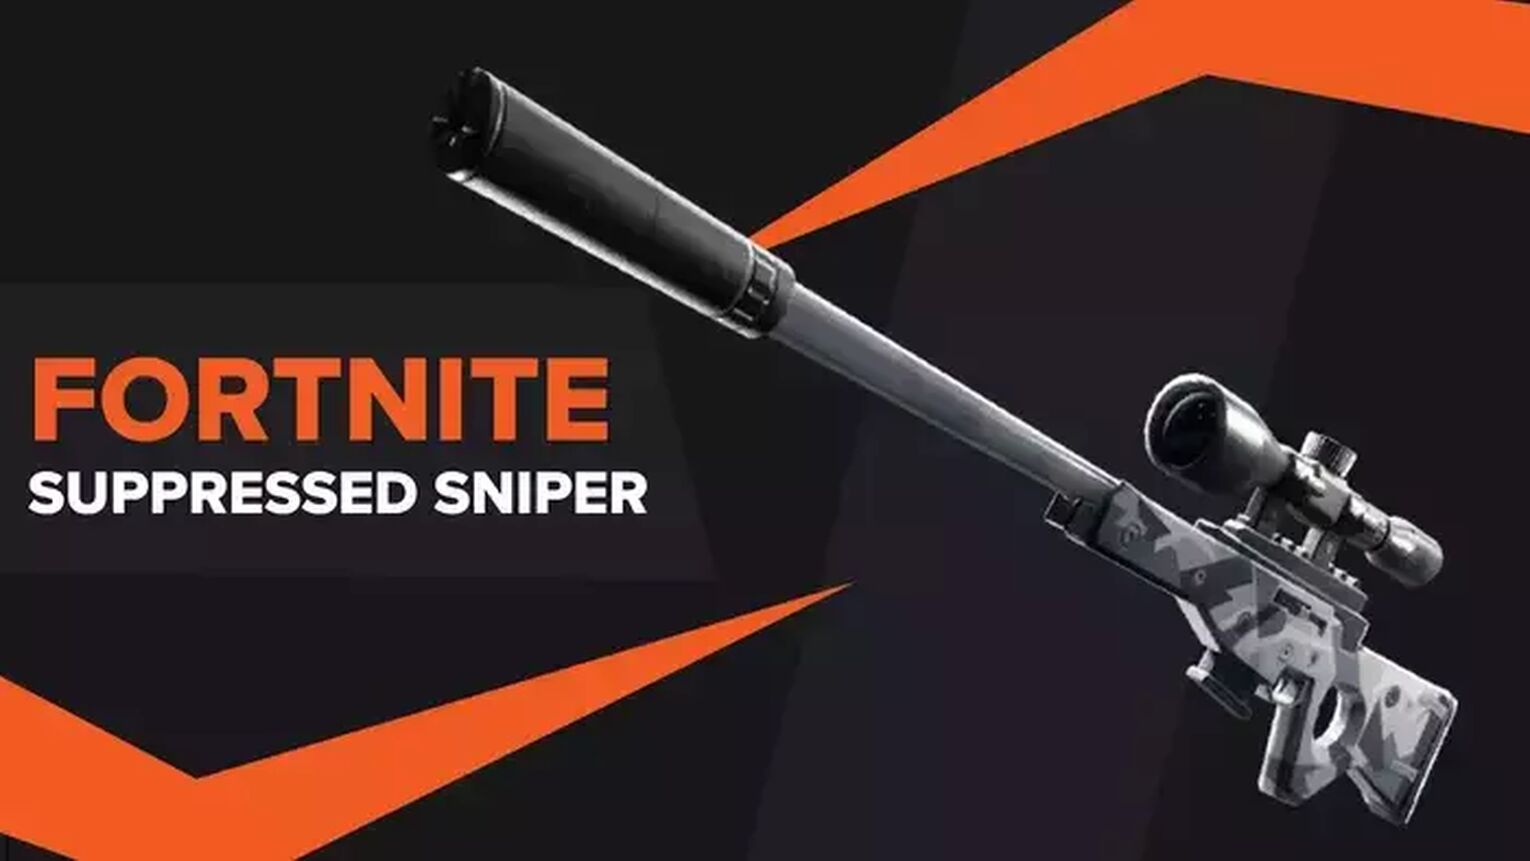 Fortnite Snipers guide (V9.10) - Fortnite Sniper tips, Sniper aiming guide,  Fortnite's best Sniper Rifle